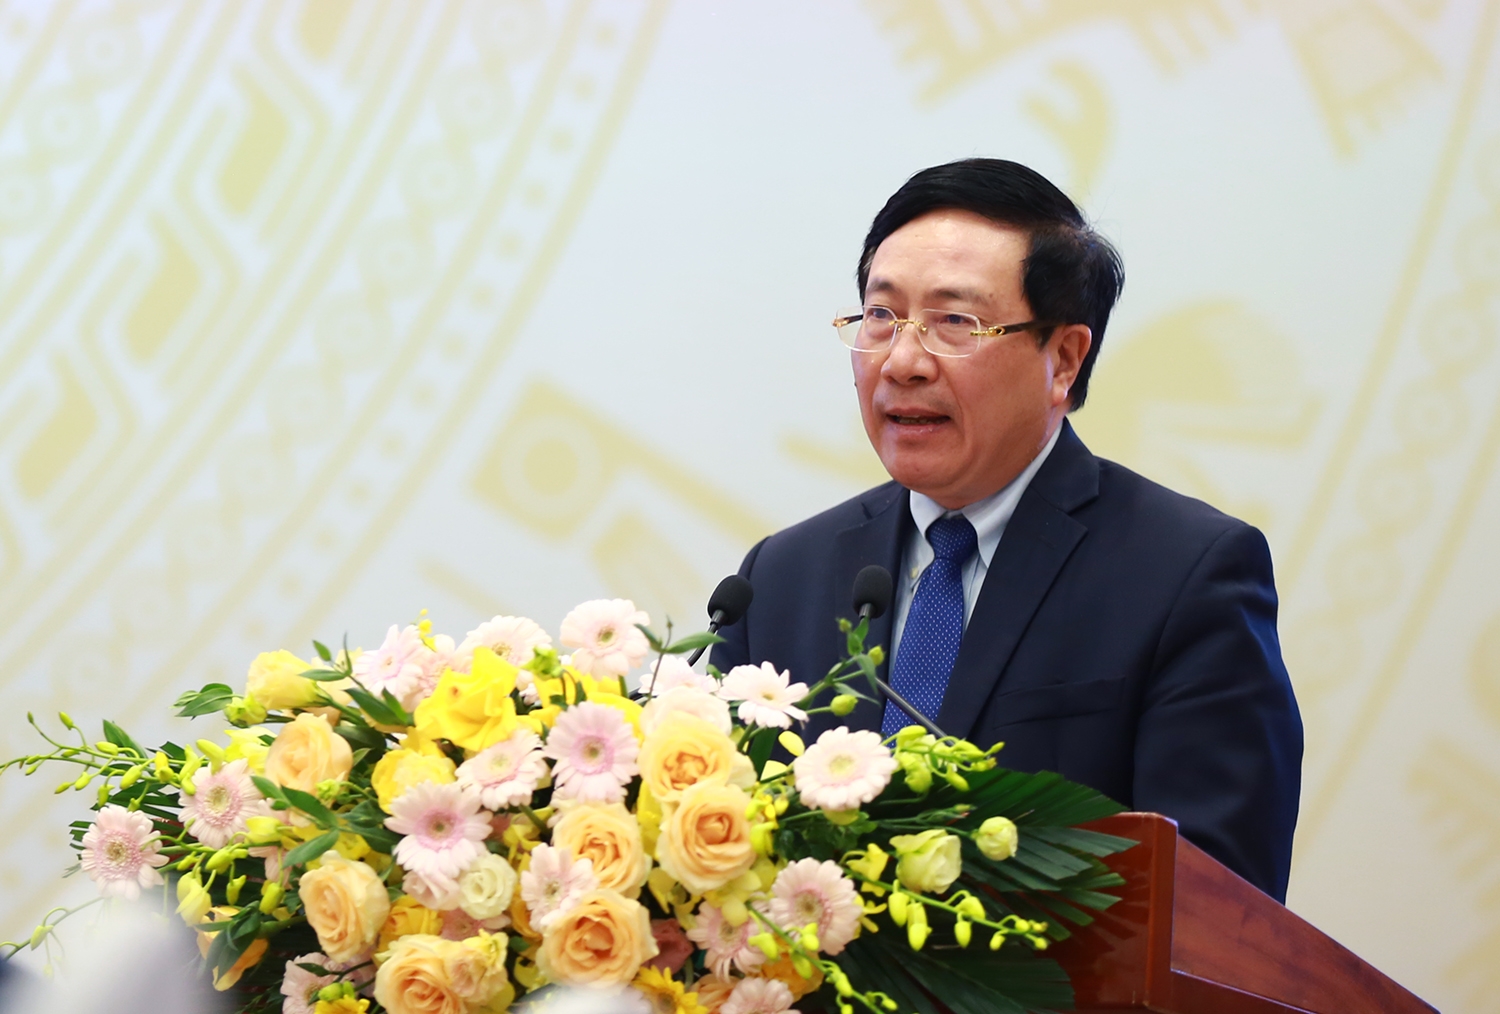 Phó Thủ tướng Thường trực Phạm Bình Minh nhấn mạnh yêu cầu đổi mới mạnh mẽ tư duy trong xây dựng, hoàn thiện thể chế - Ảnh: VGP/Hải Minh